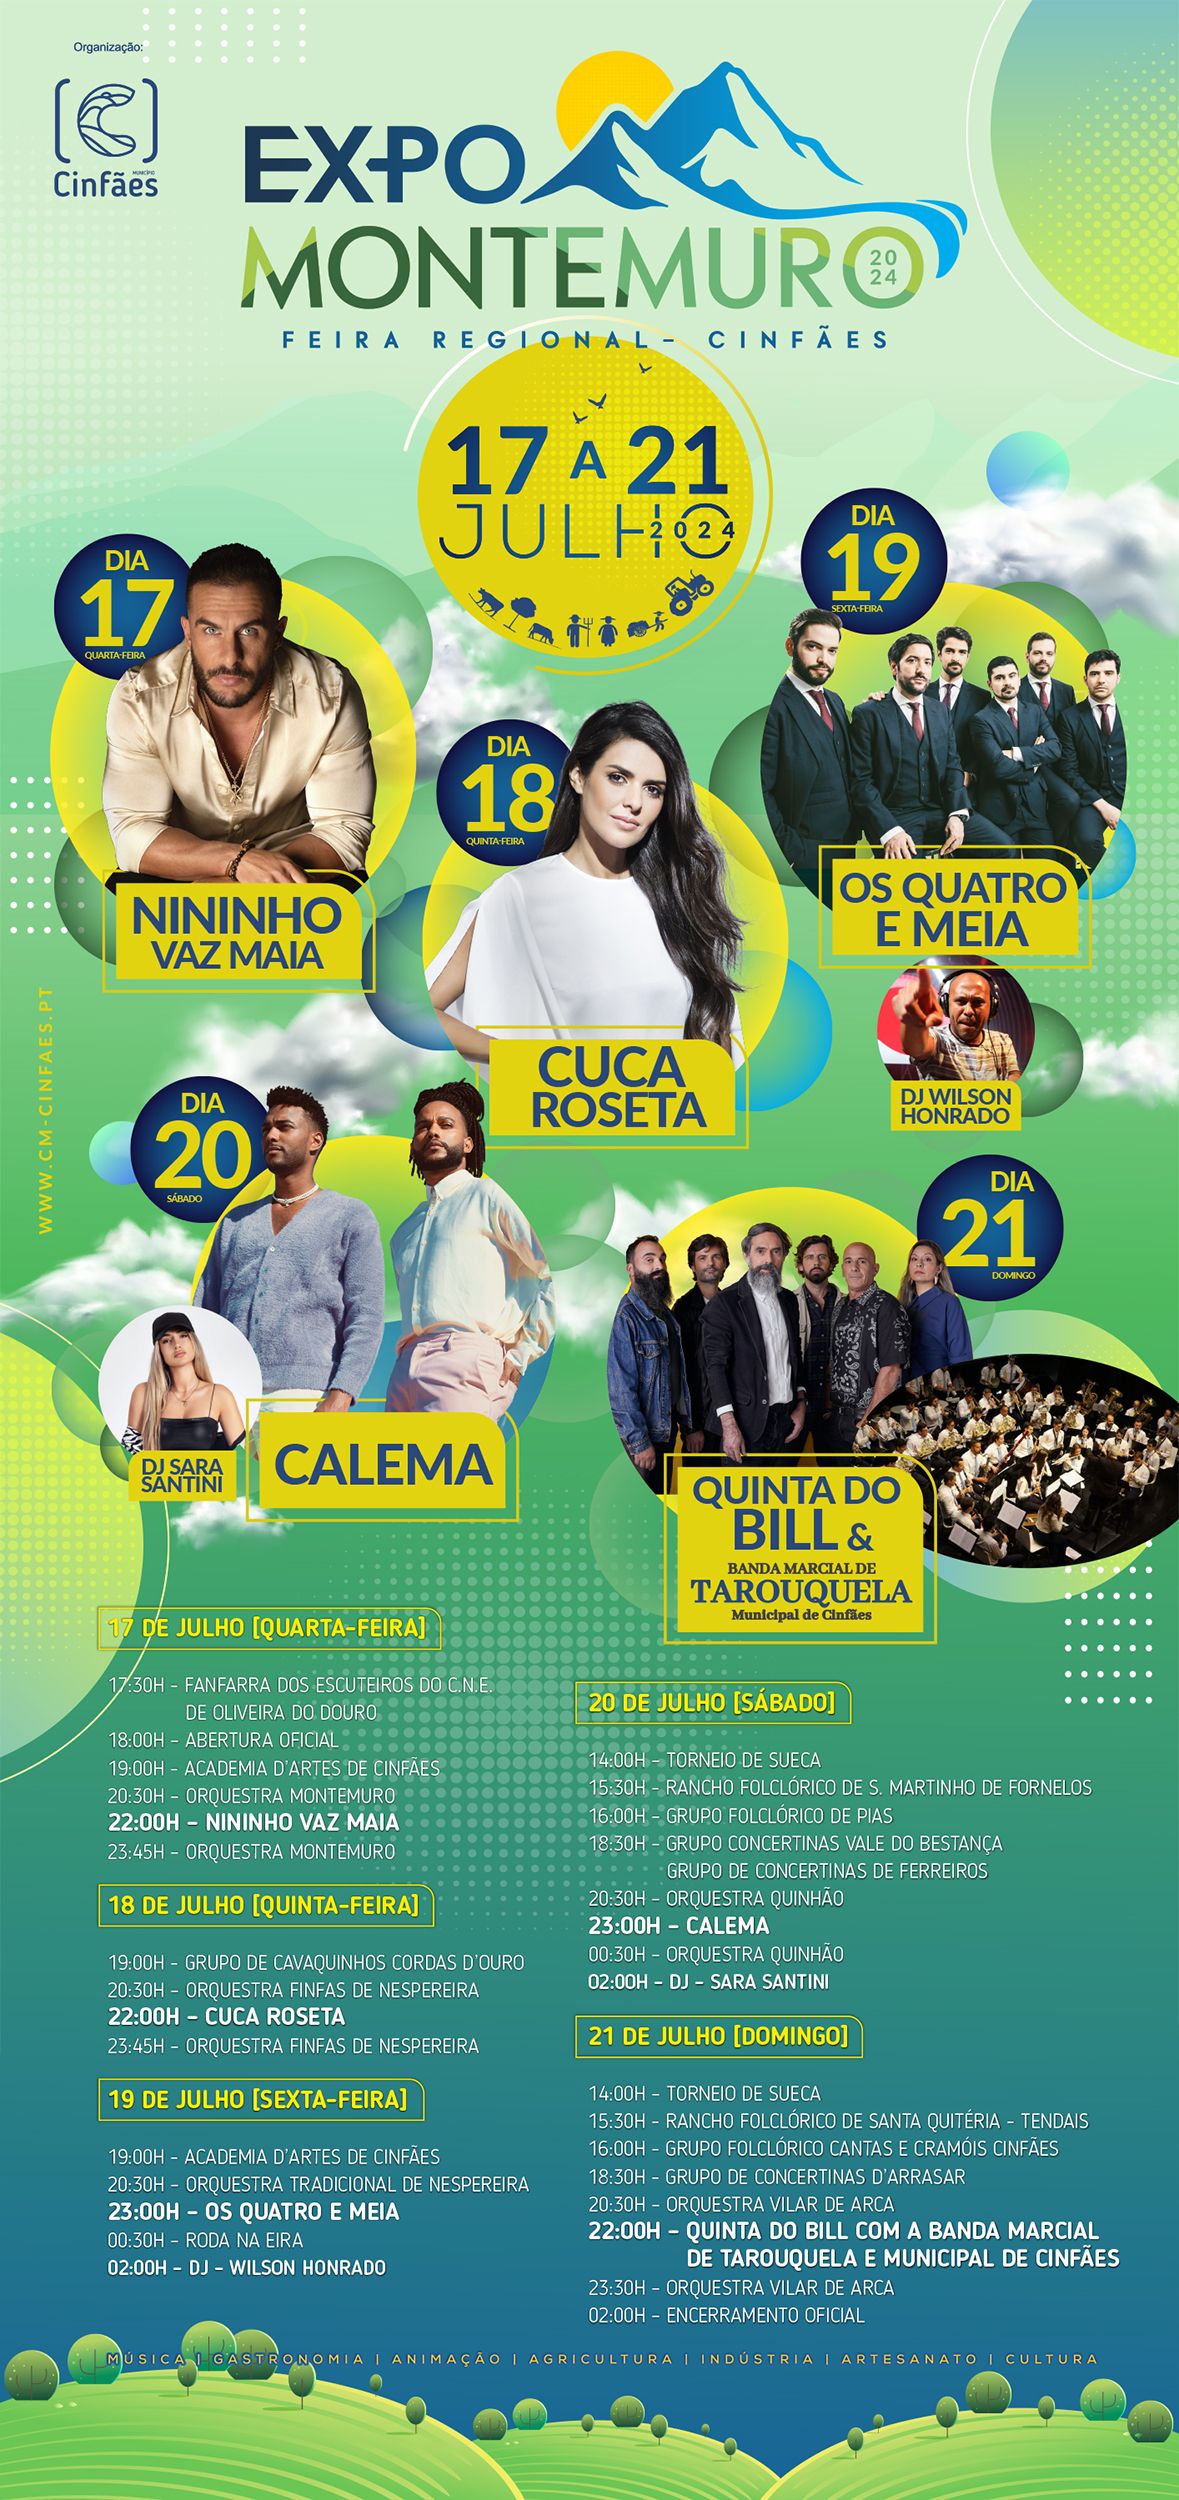 ExpoMontemuro – Feira Regional de 17 a 21 de julho